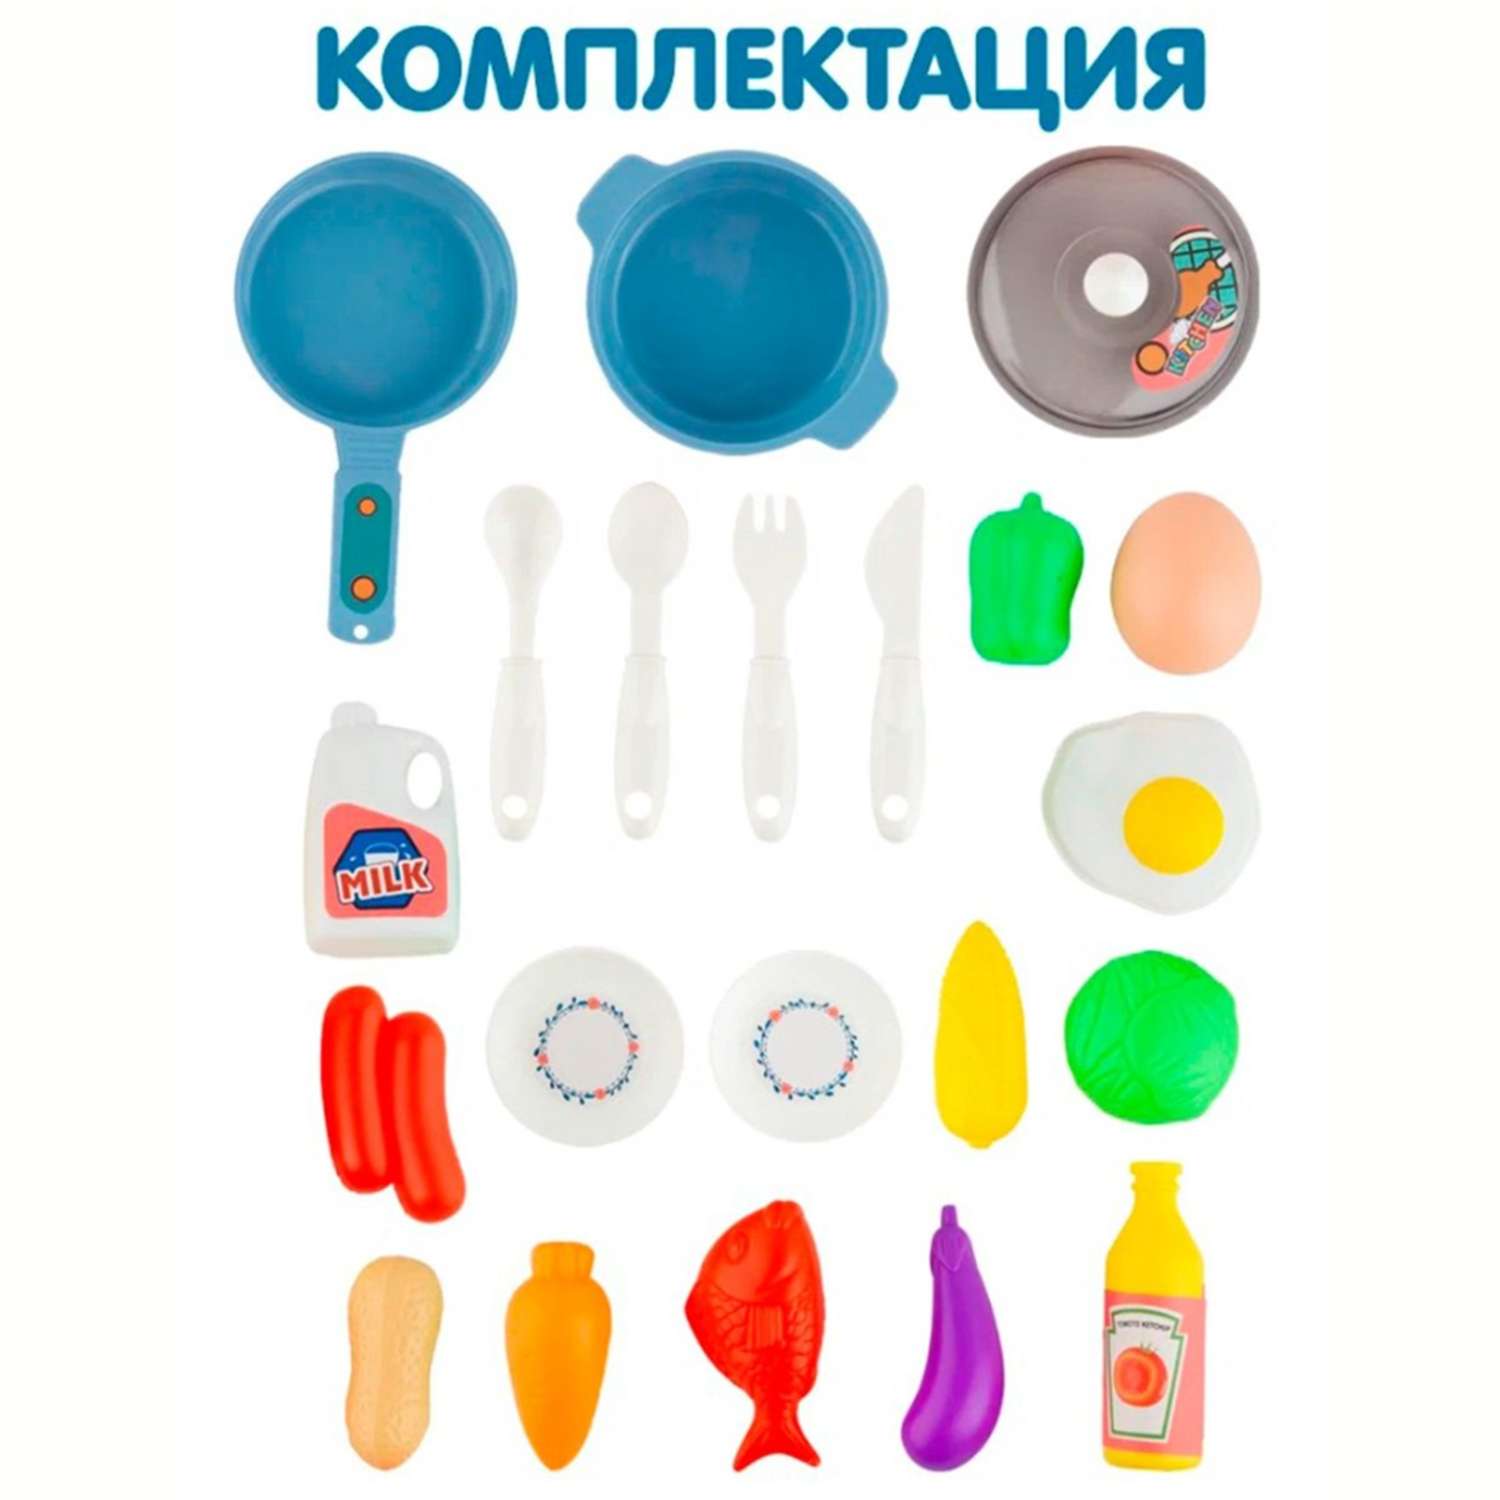 Детская кухня SHARKTOYS Интерактивная с водой светом паром звуками посудой продуктами 43 предмета - фото 6